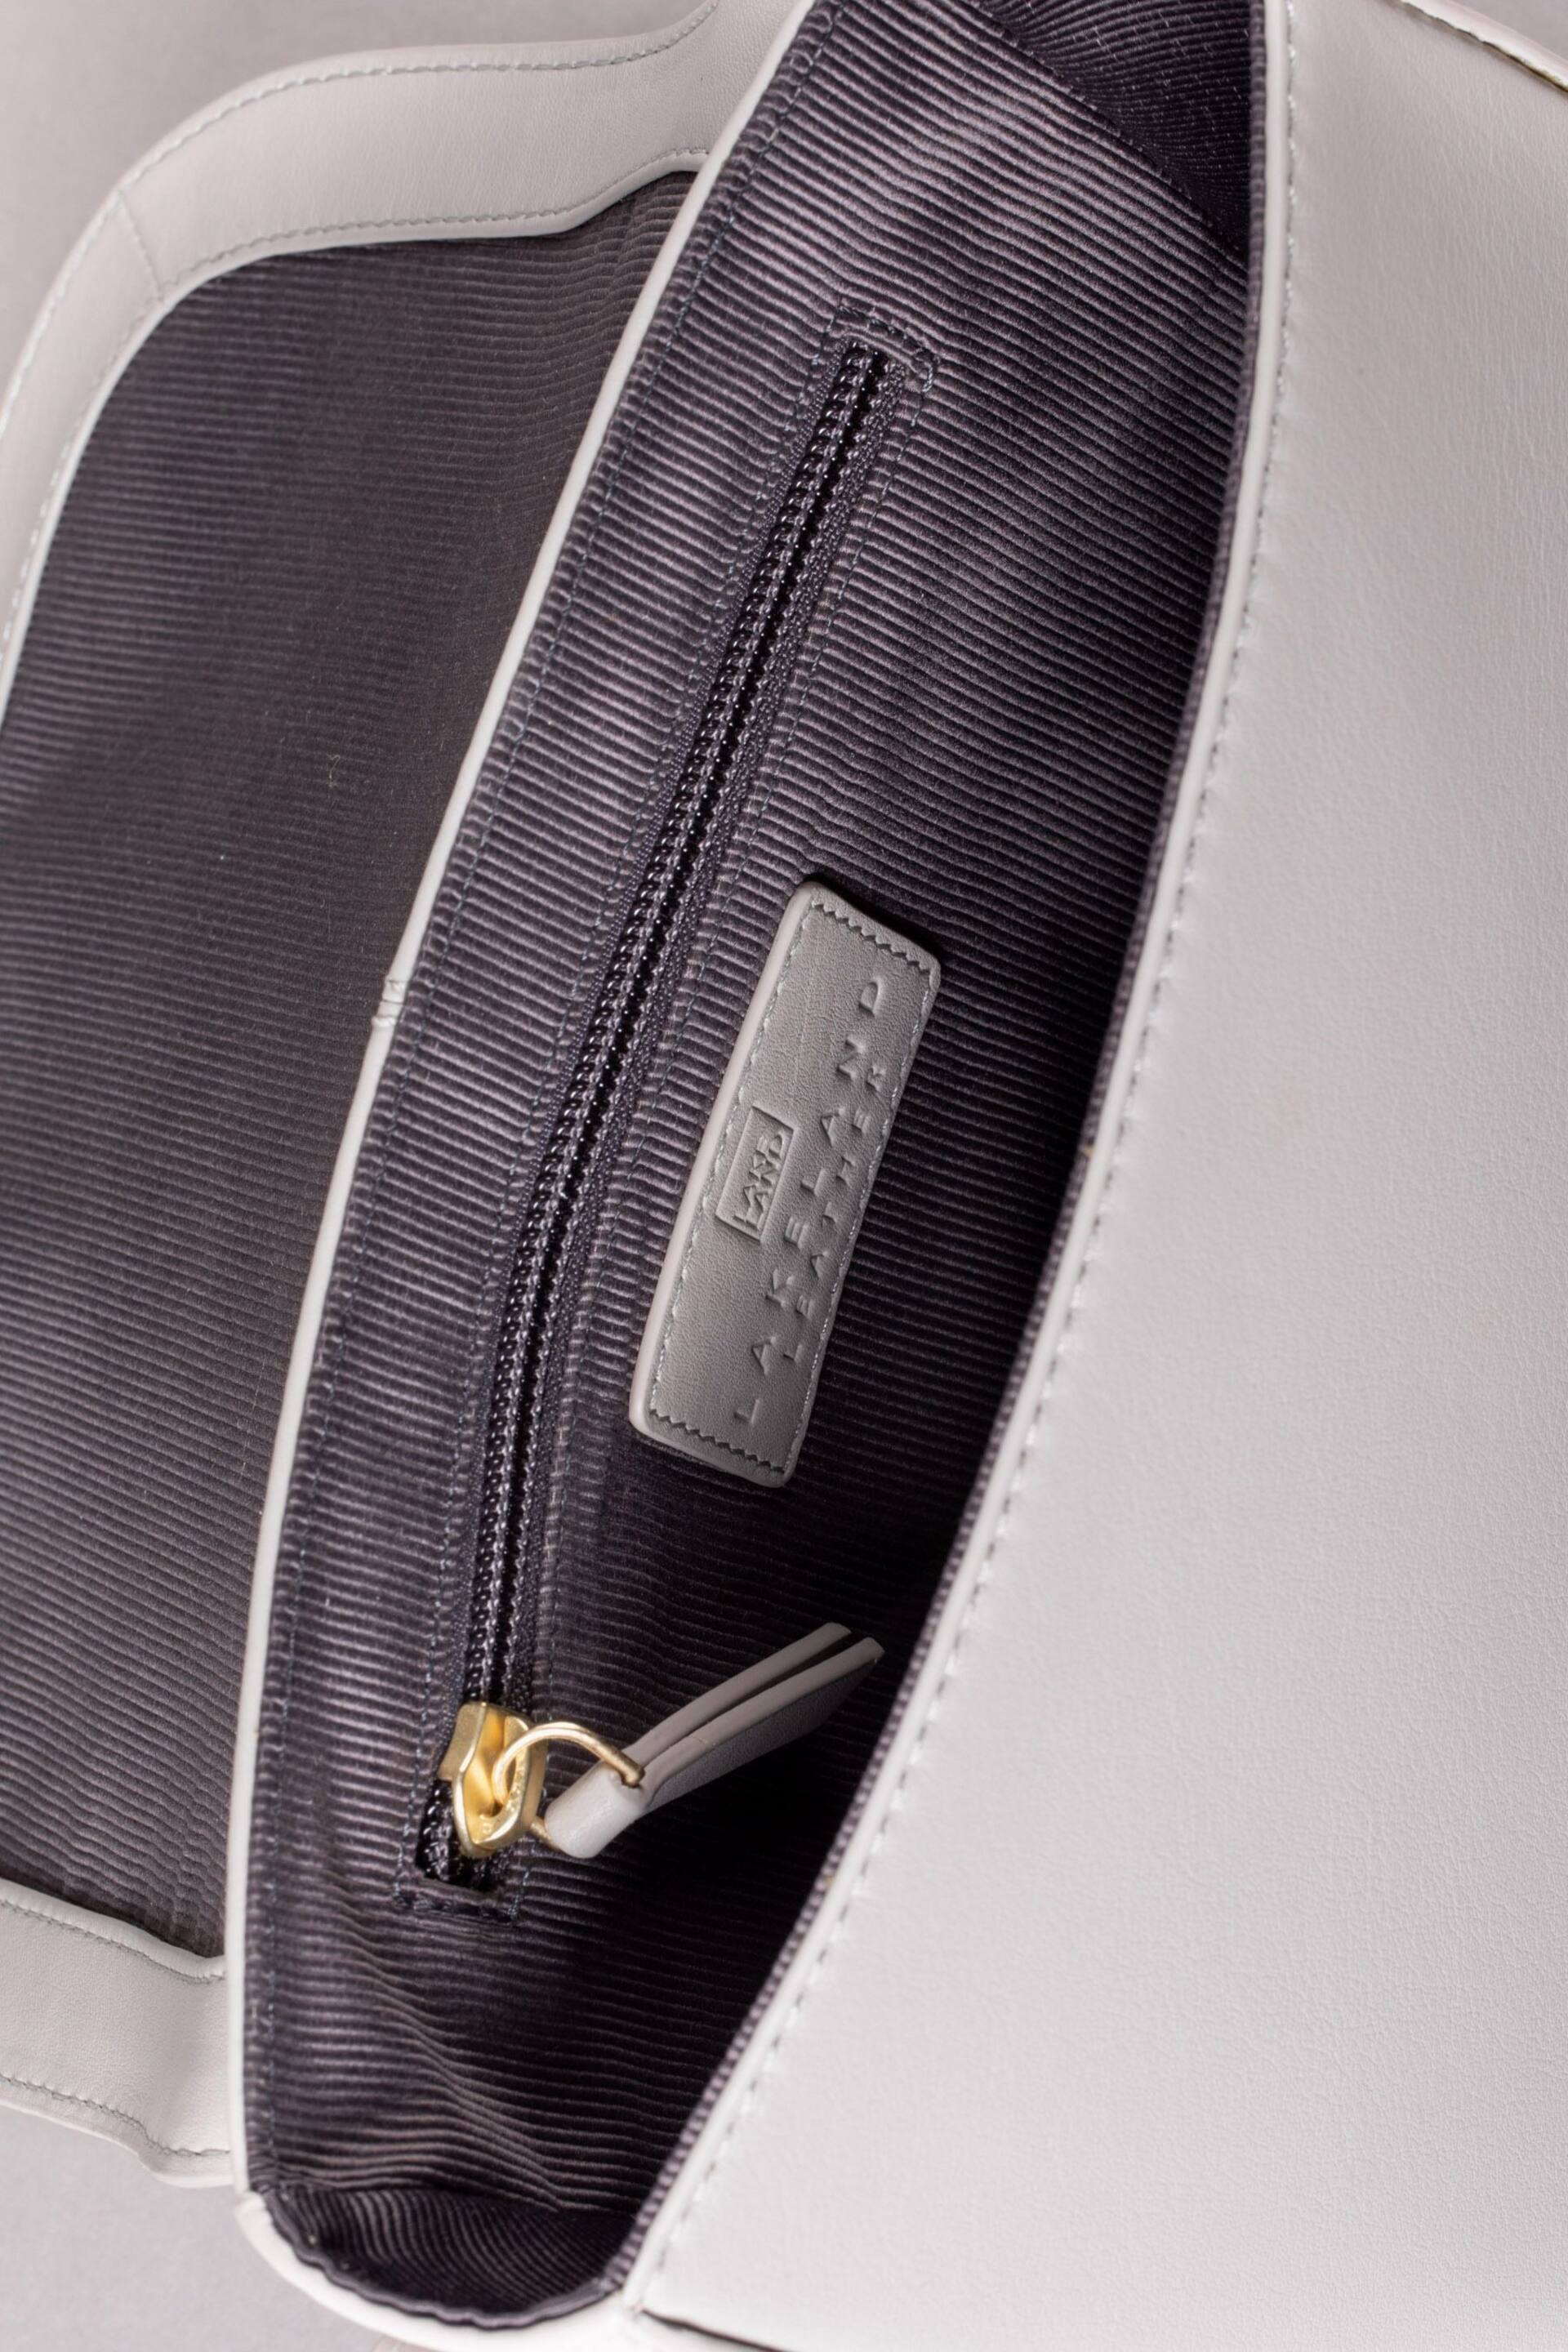 Lakeland Leather Grey Tarnbeck Leather Saddle Bag - Image 8 of 8